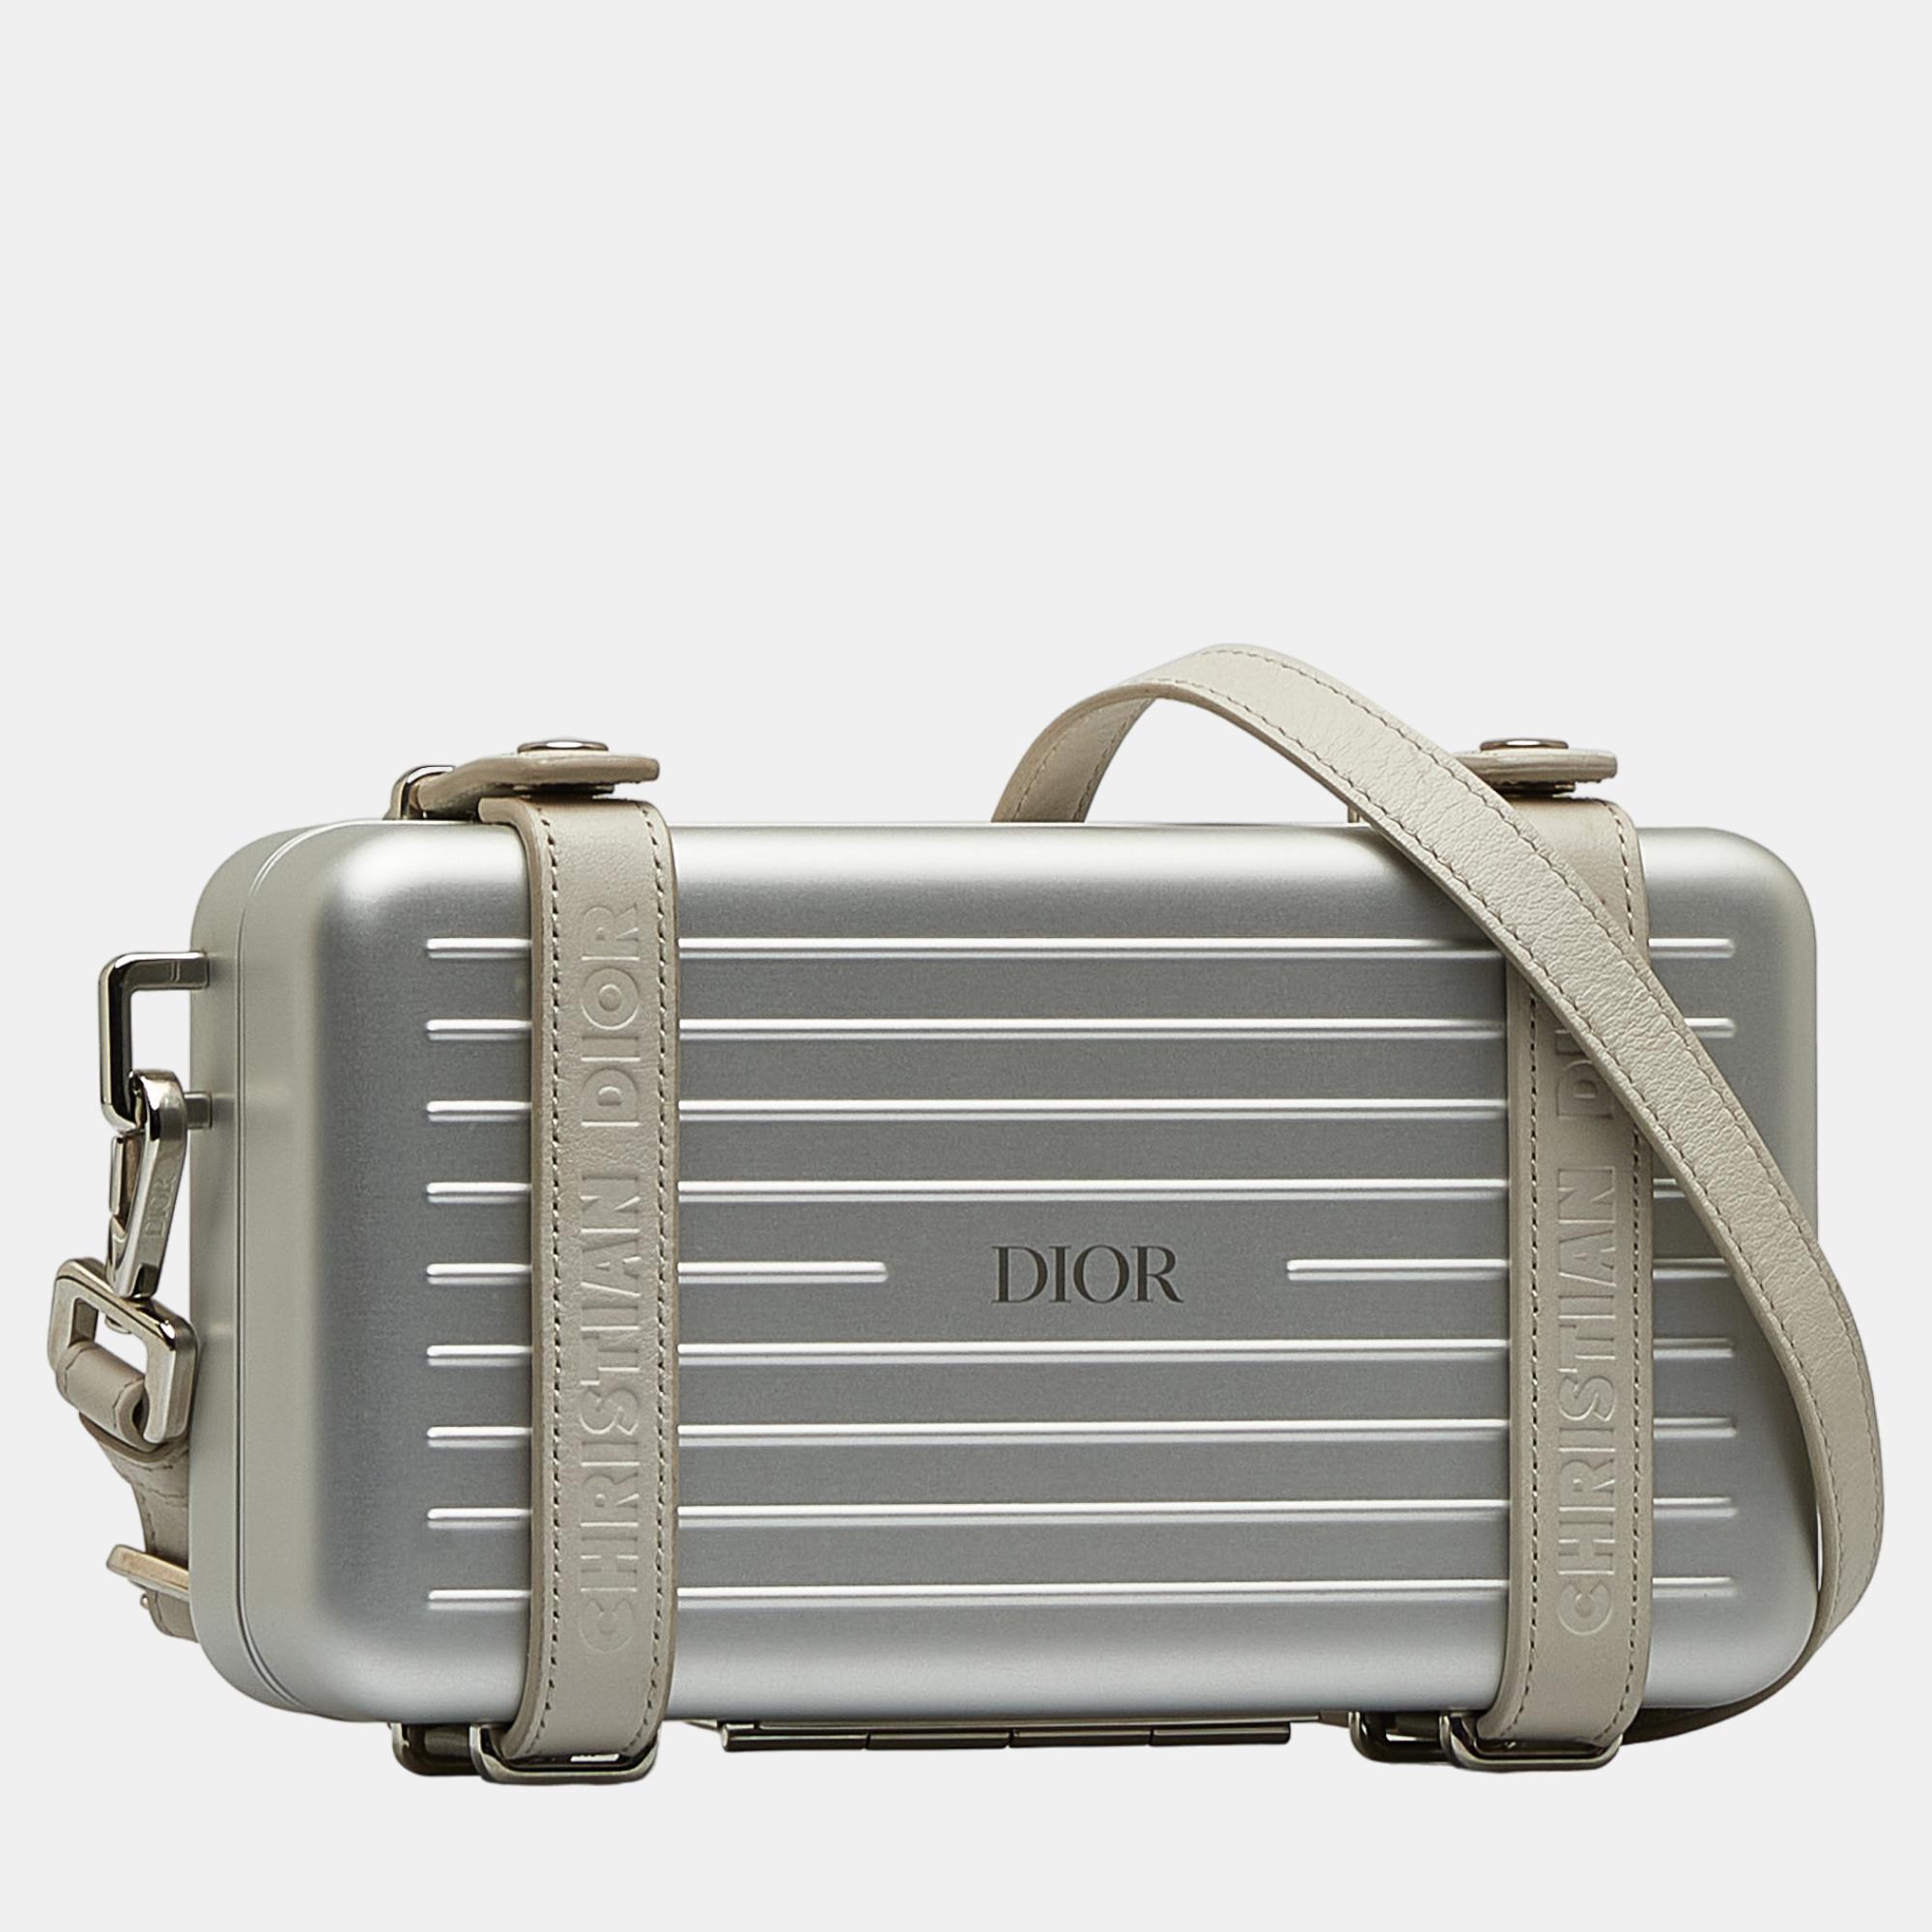 

Dior x Rimowa Silver Personal Utility Case